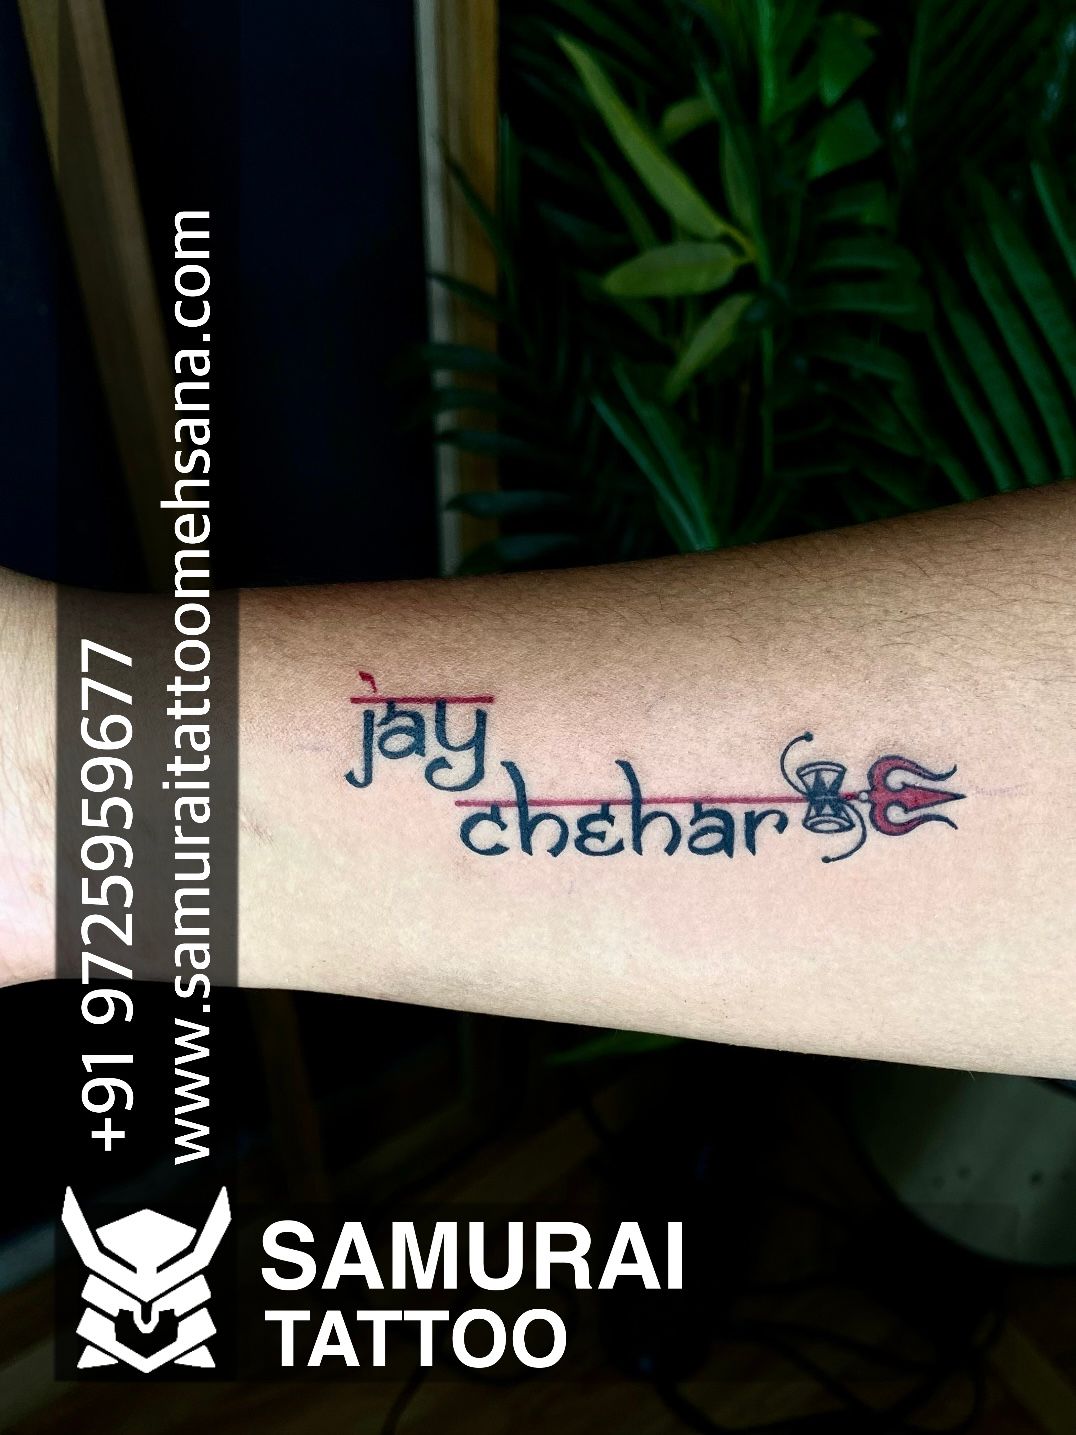 Pin by Sneha Suresh on Tattoos | Shiva tattoo, Tattoos, Shiva tattoo design